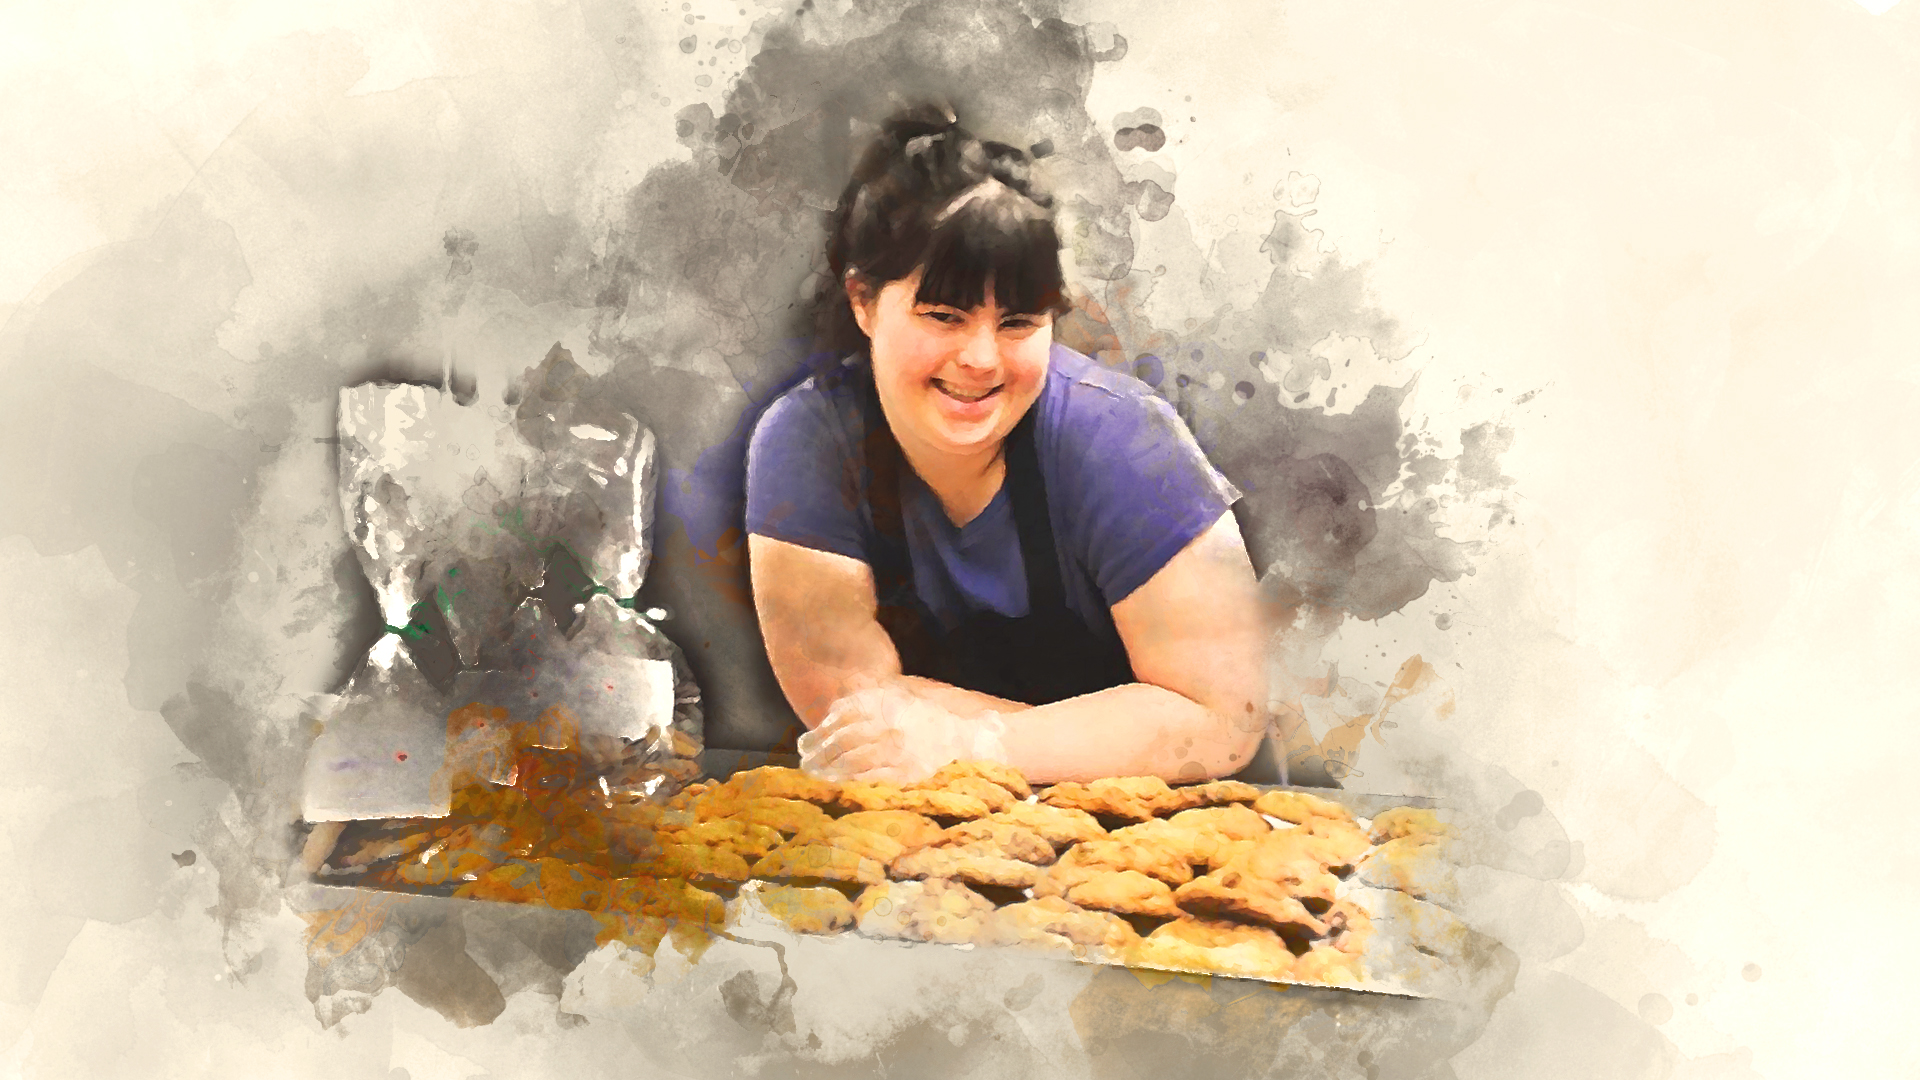  #Story2Tell | Collette Divitto | “Το τέλειο μπισκότο” ανήκει σε ένα ταλαντούχο κορίτσι με Σύνδρομο Down